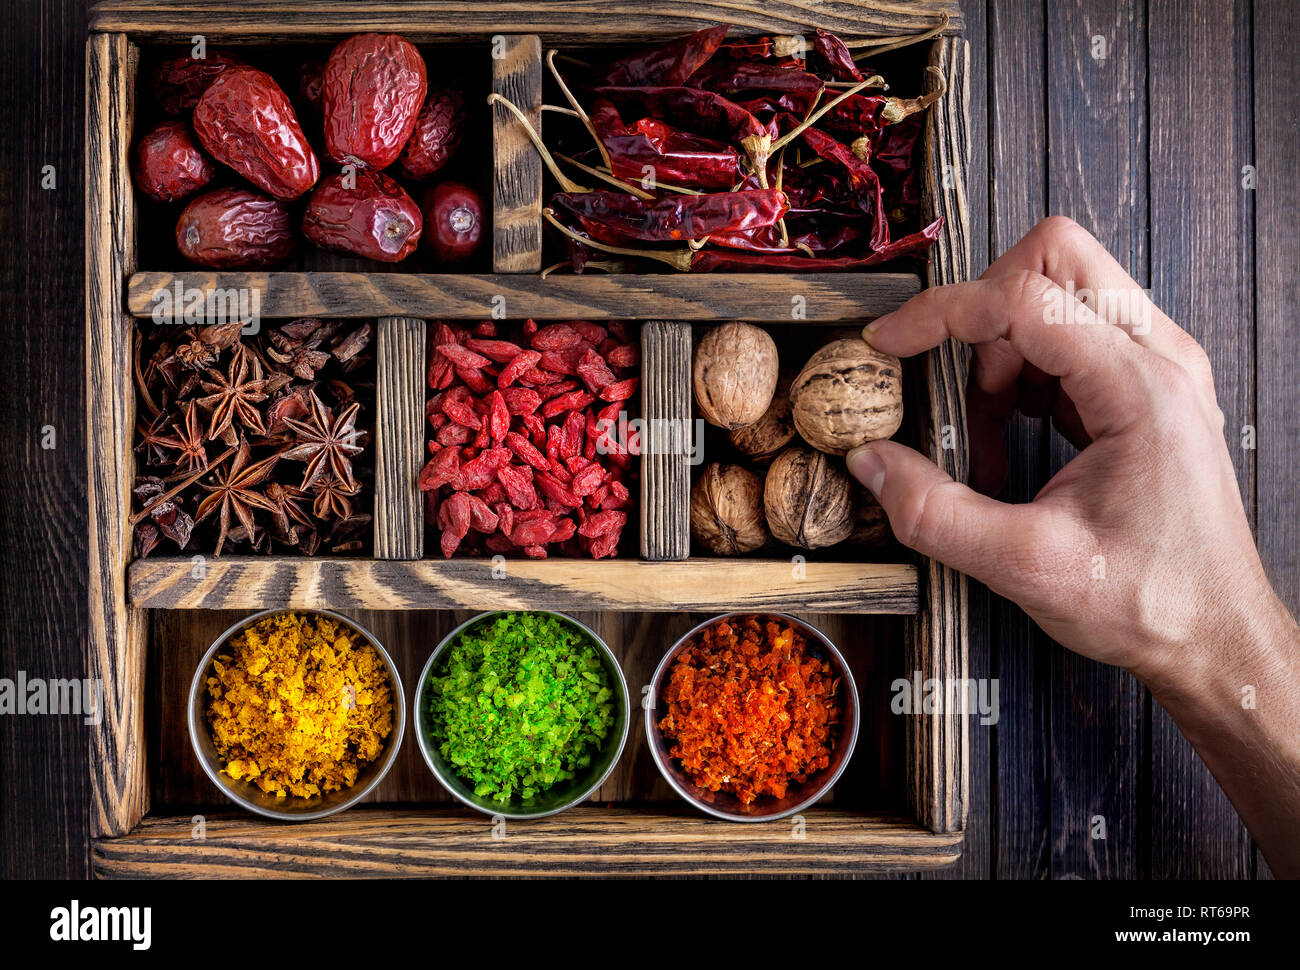 Las especias, los frutos secos y la mano que sostiene la nuez en la caja de madera Foto de stock